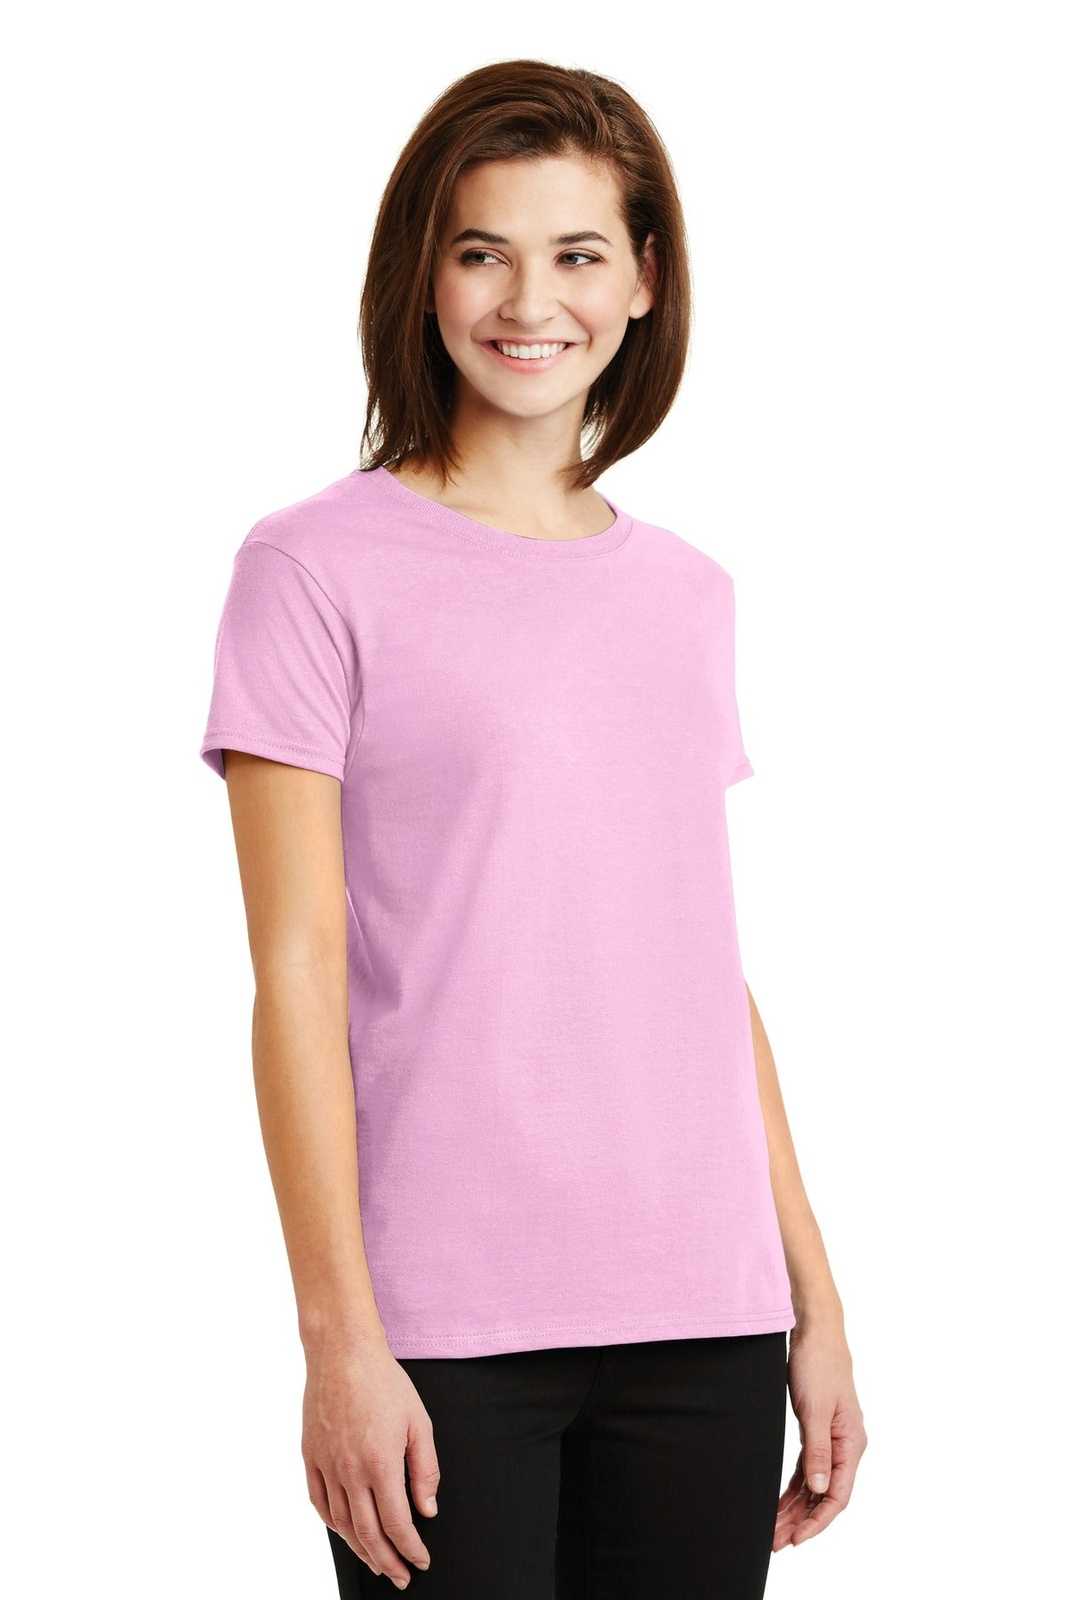 Gildan 2000L Ladies Ultra Cotton 100% Cotton T-Shirt - Light Pink - HIT a Double